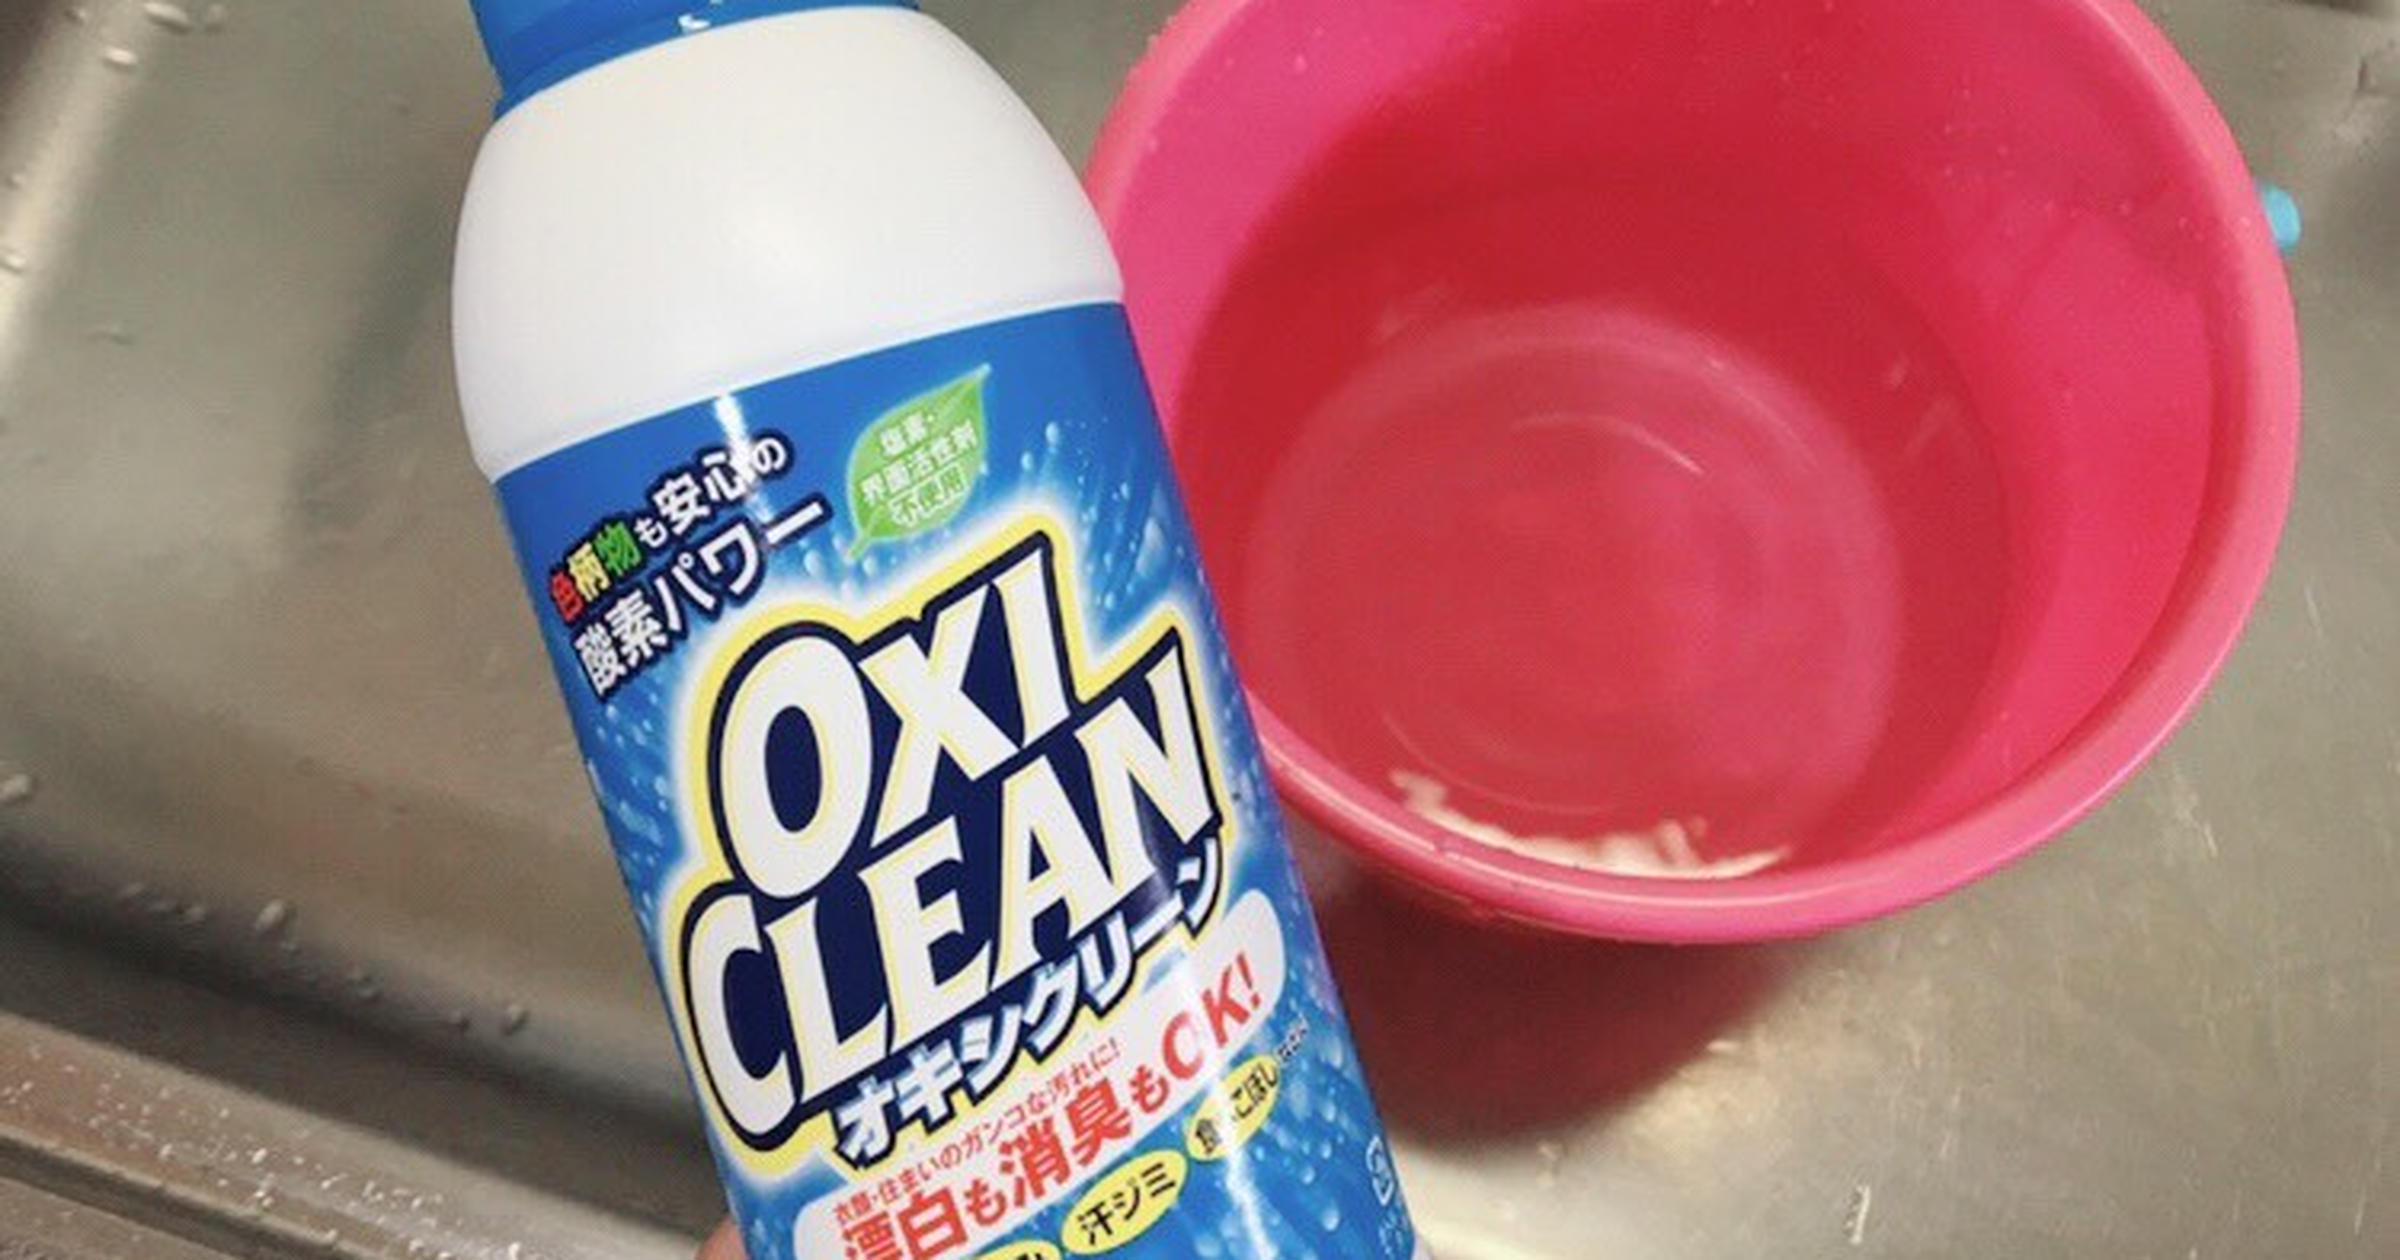 オキシ液 と オキシパック で簡単リビングお掃除 プロが紹介する簡単術 トクバイニュース